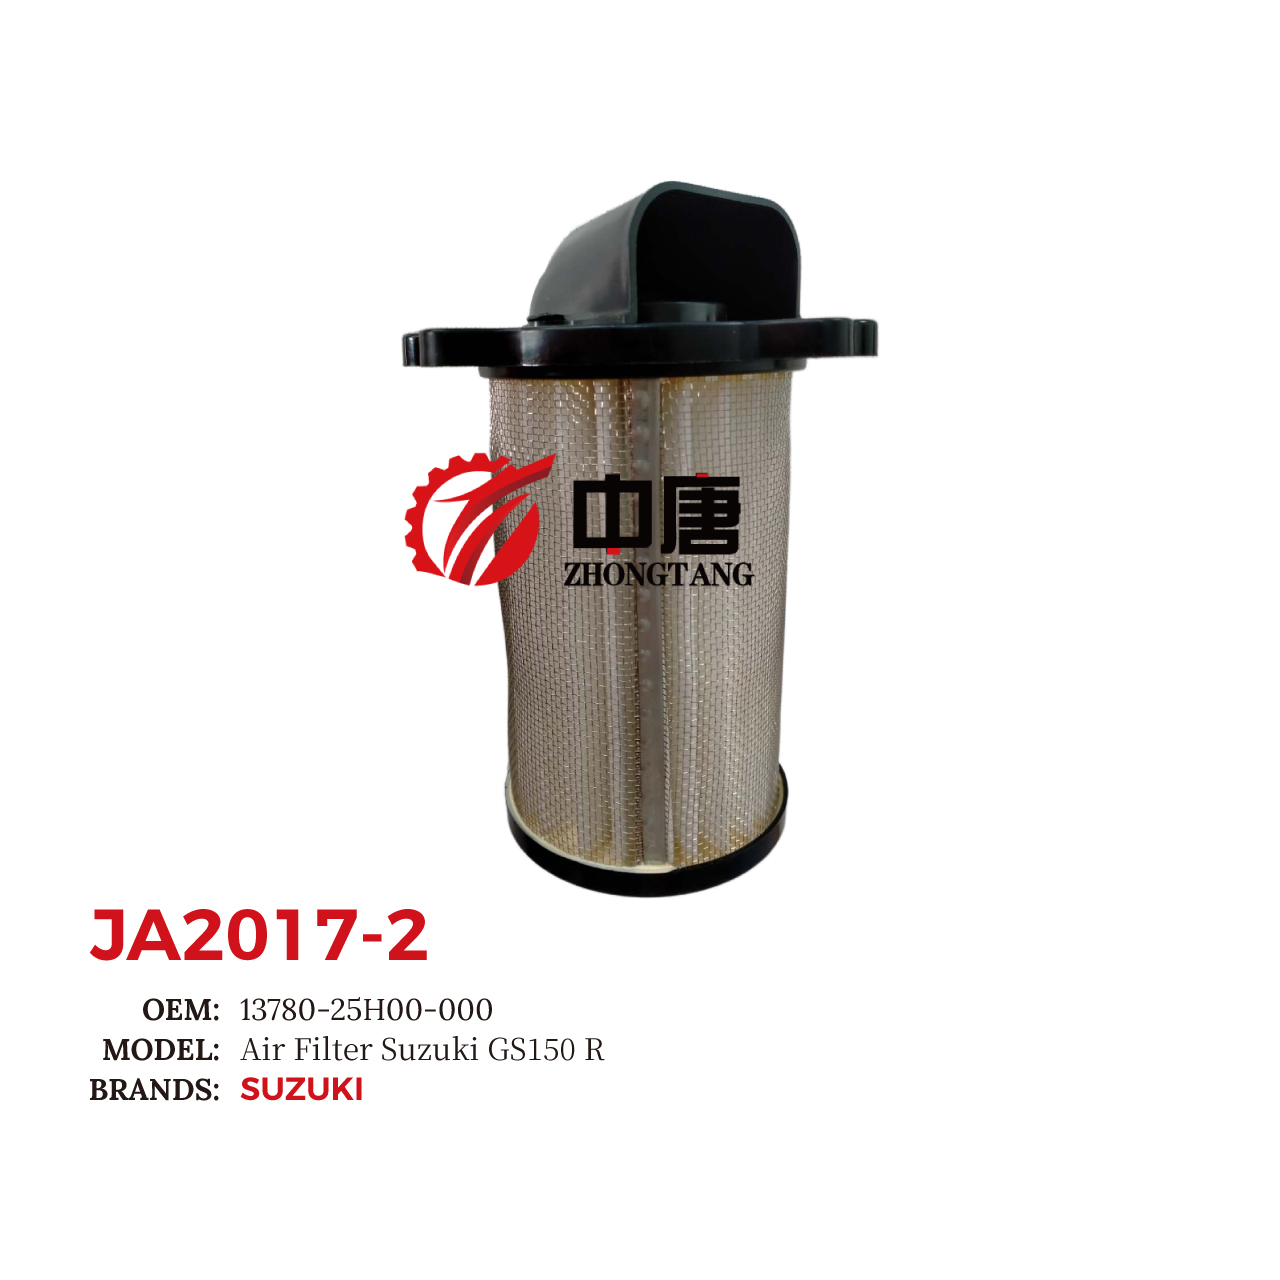 images/JA2017-2/JA2017-2_ZT_2.jpg